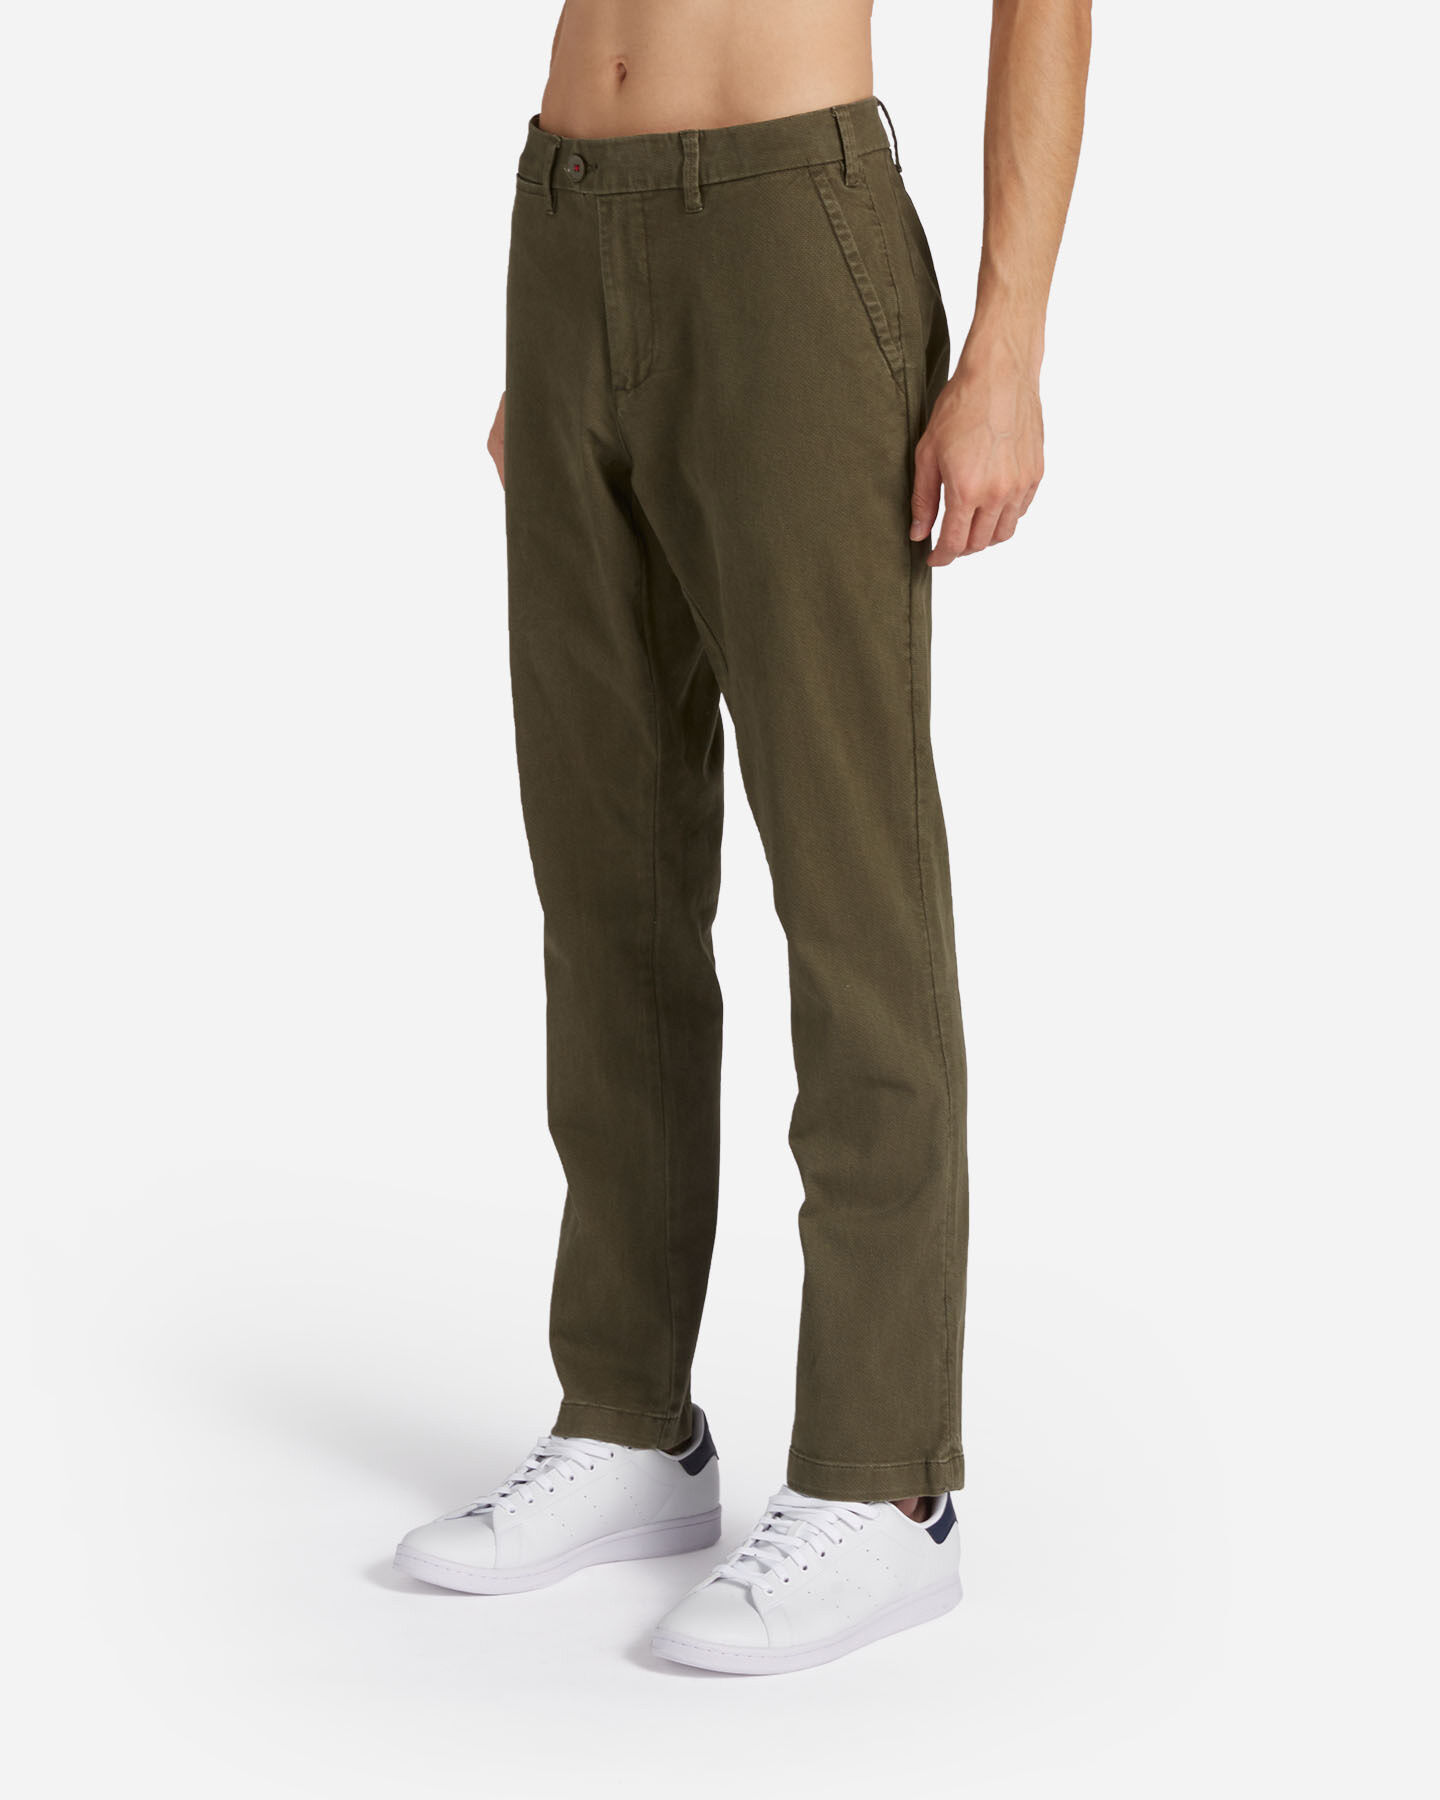  Pantalone DACK'S URBAN M S4125380|839|50 scatto 2